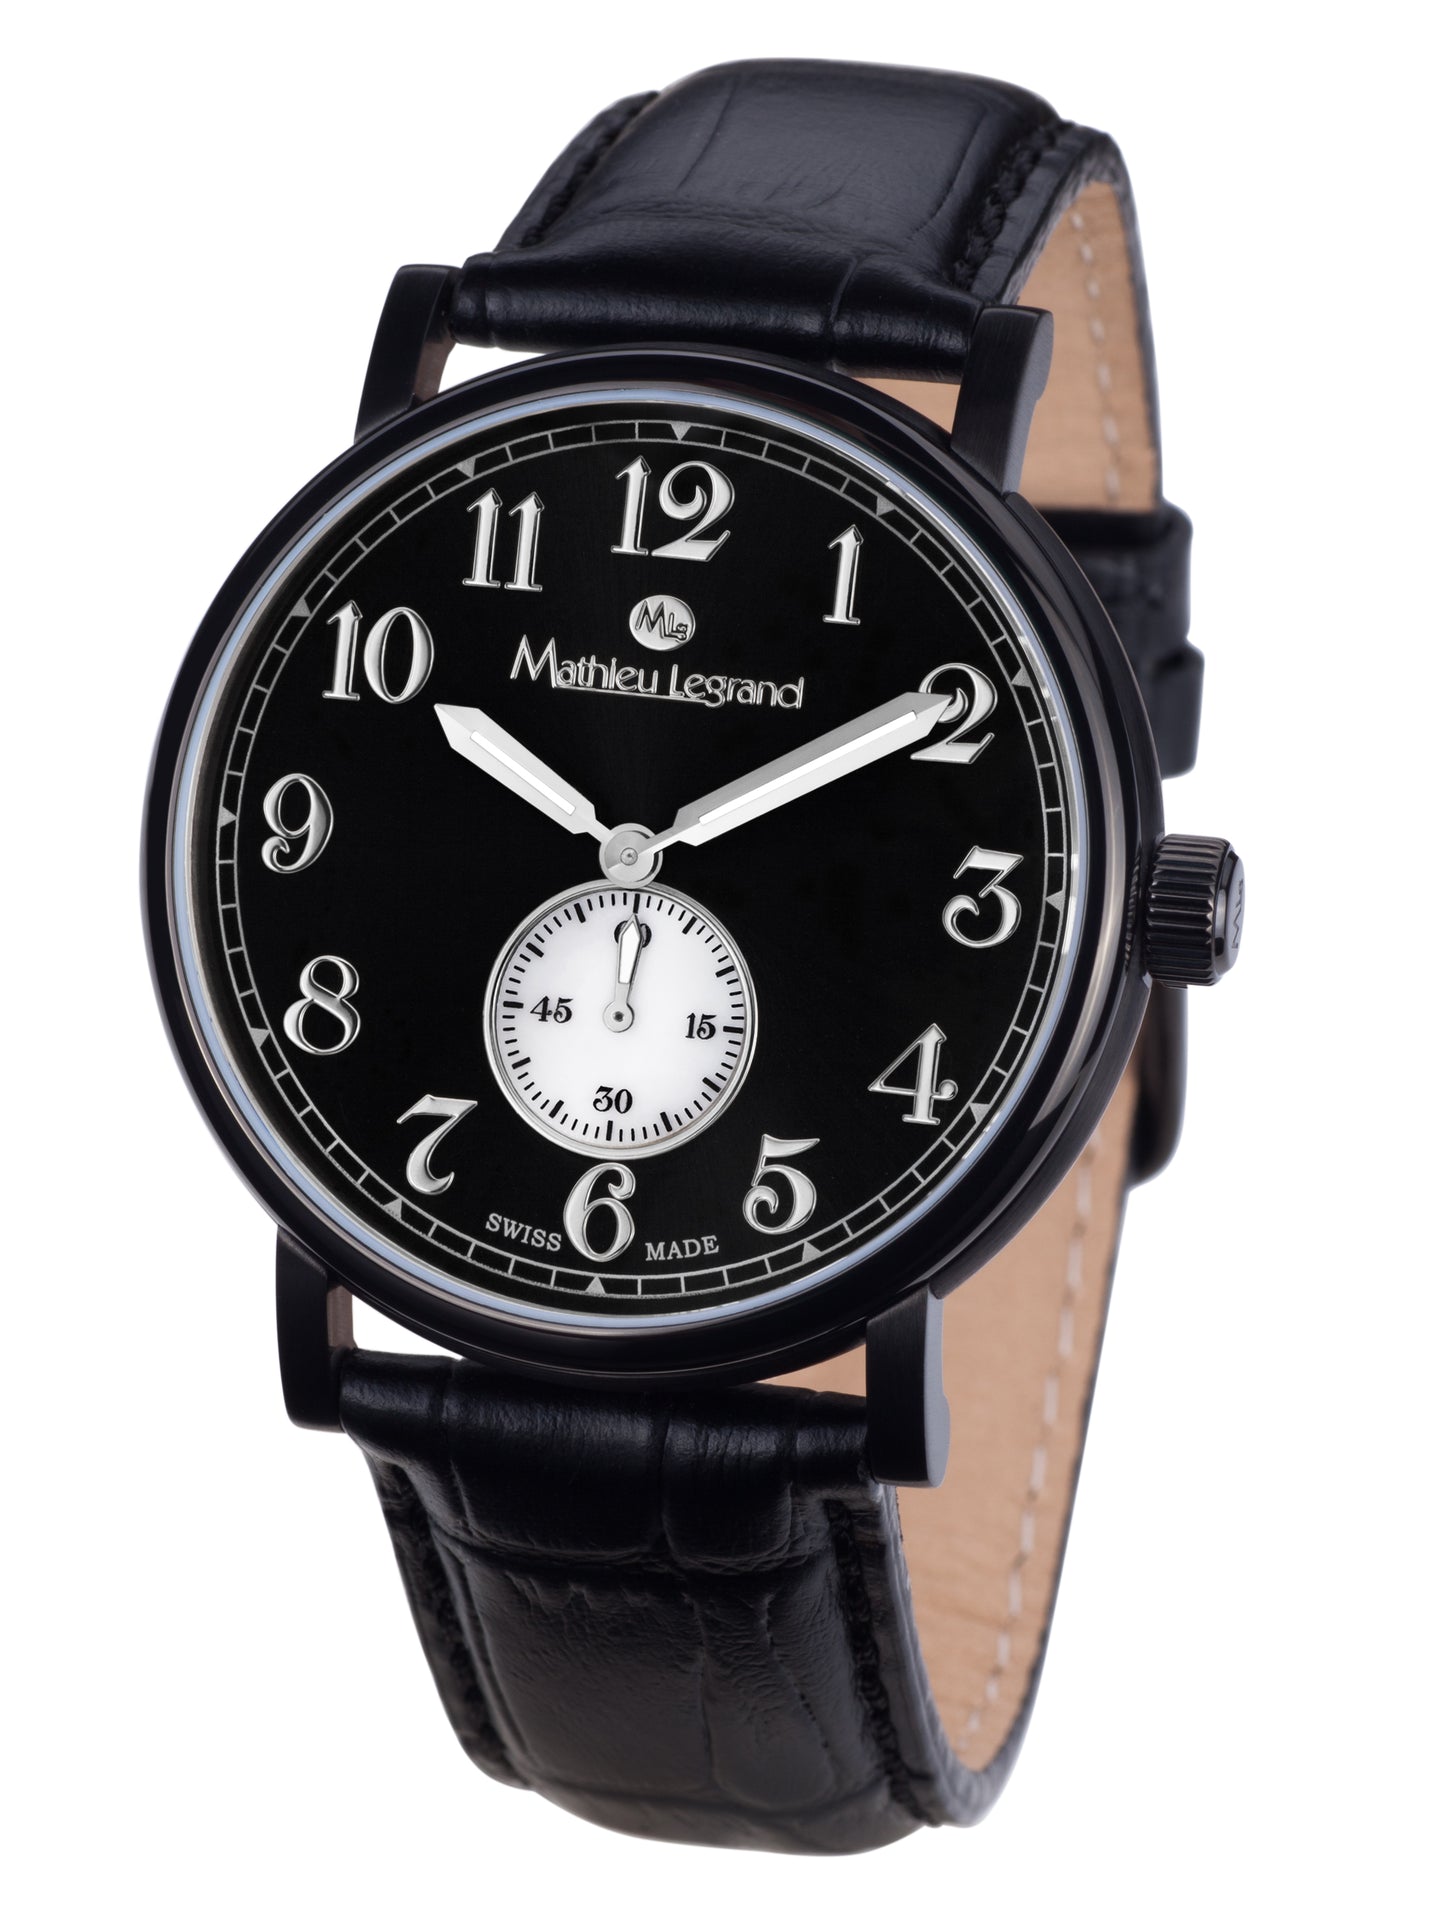 Automatic watches — Classique — Mathieu Legrand — black IP black